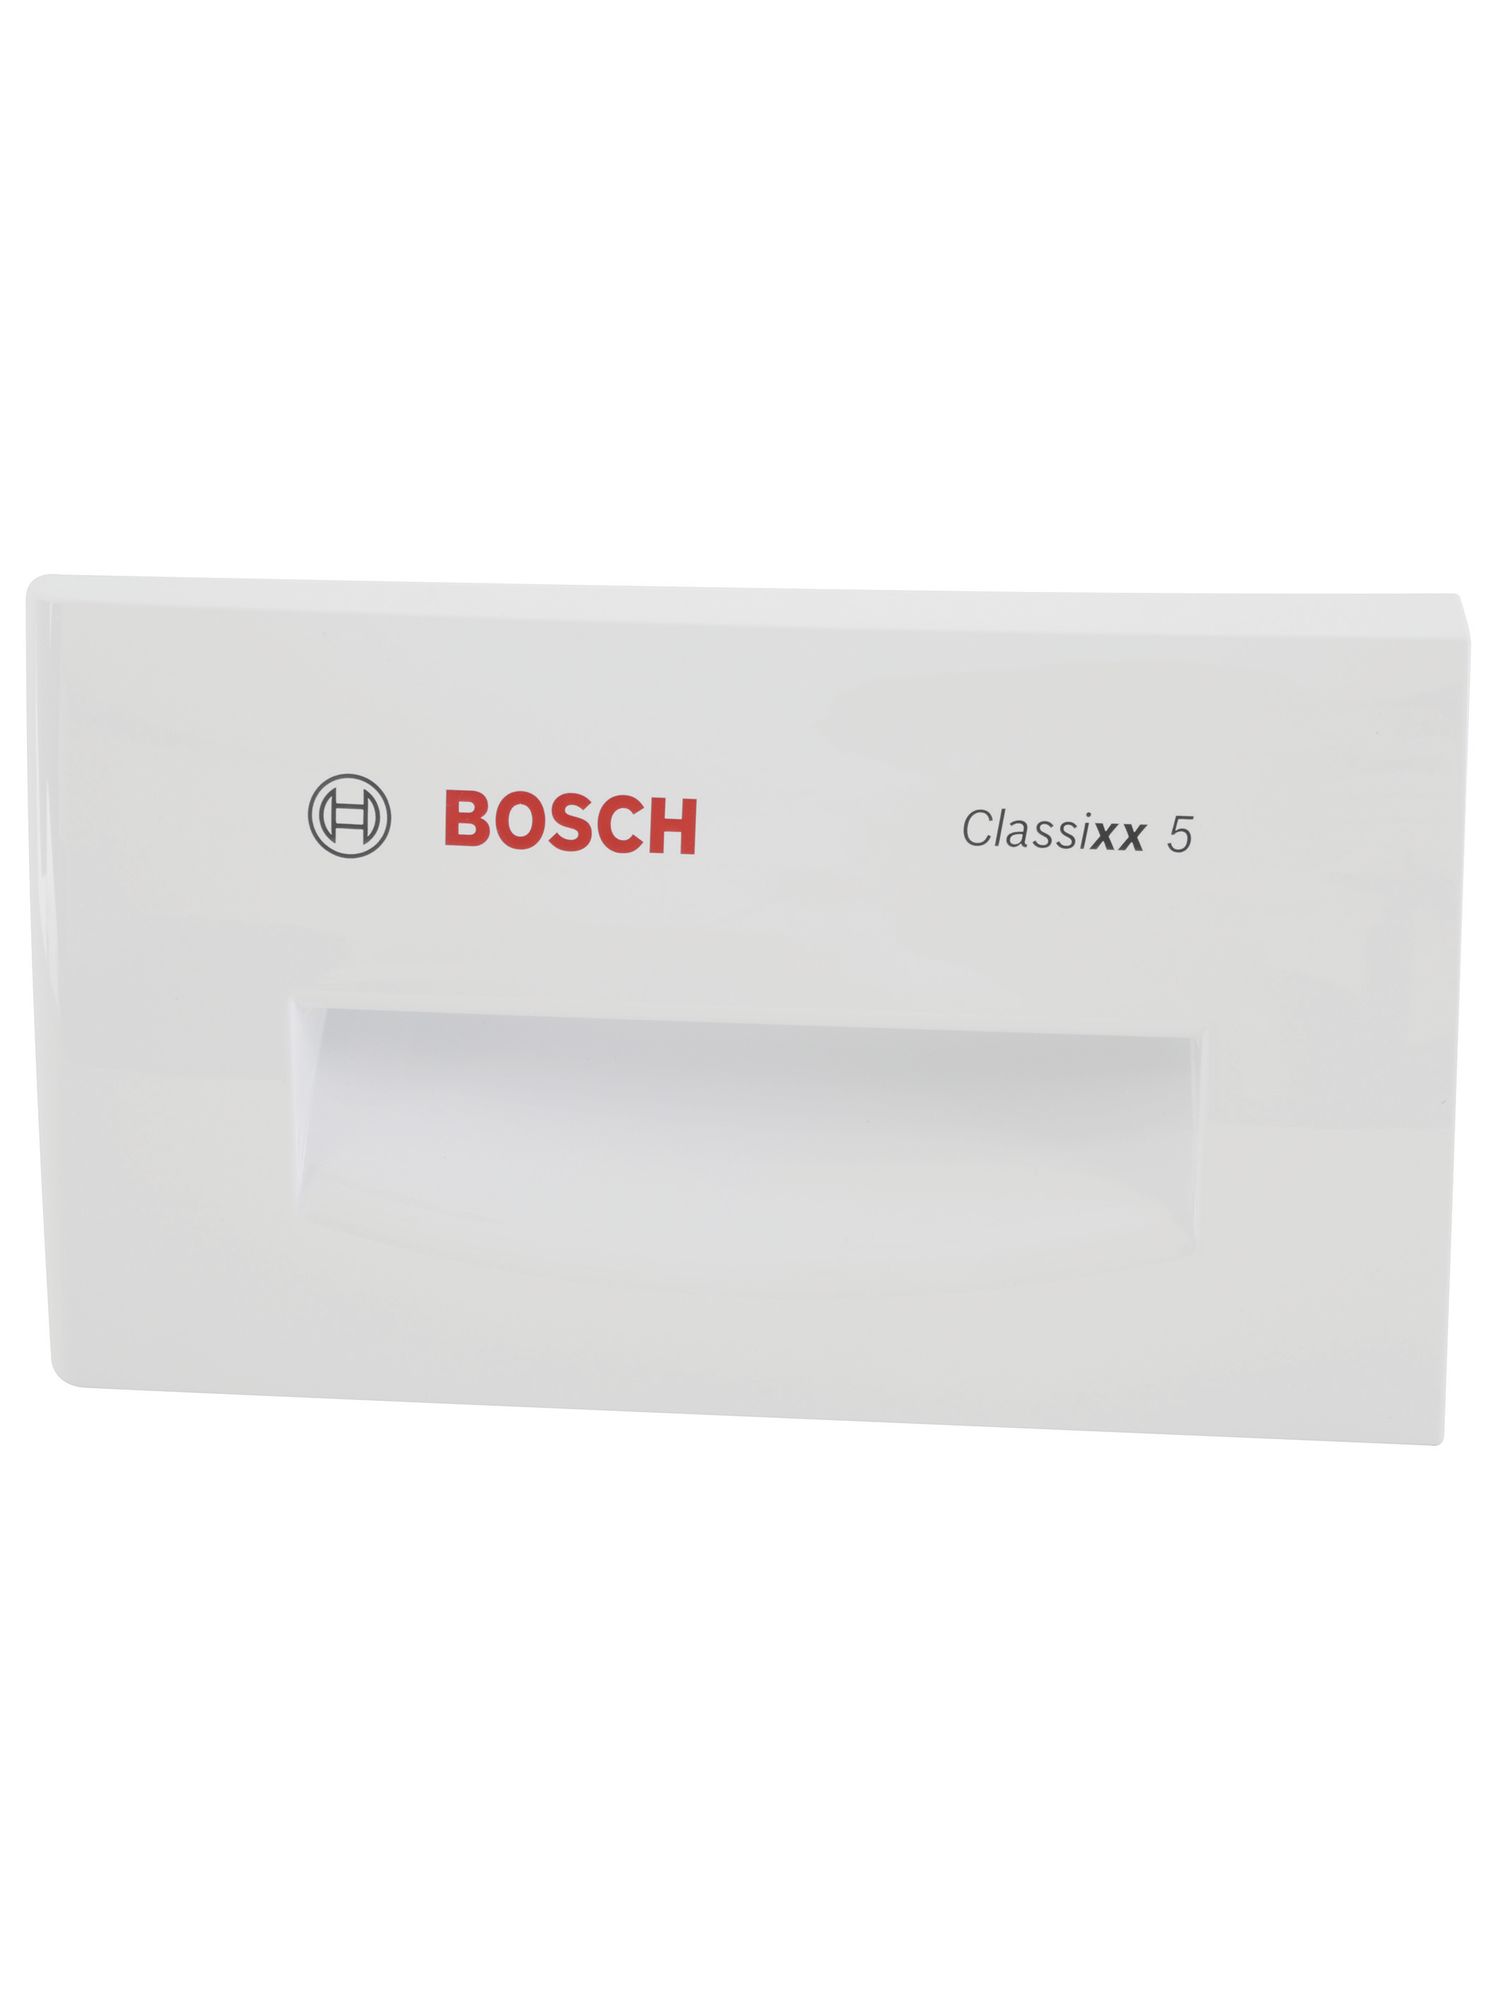 Schalengriff Bosch Classixx 5 (KD-00643914)